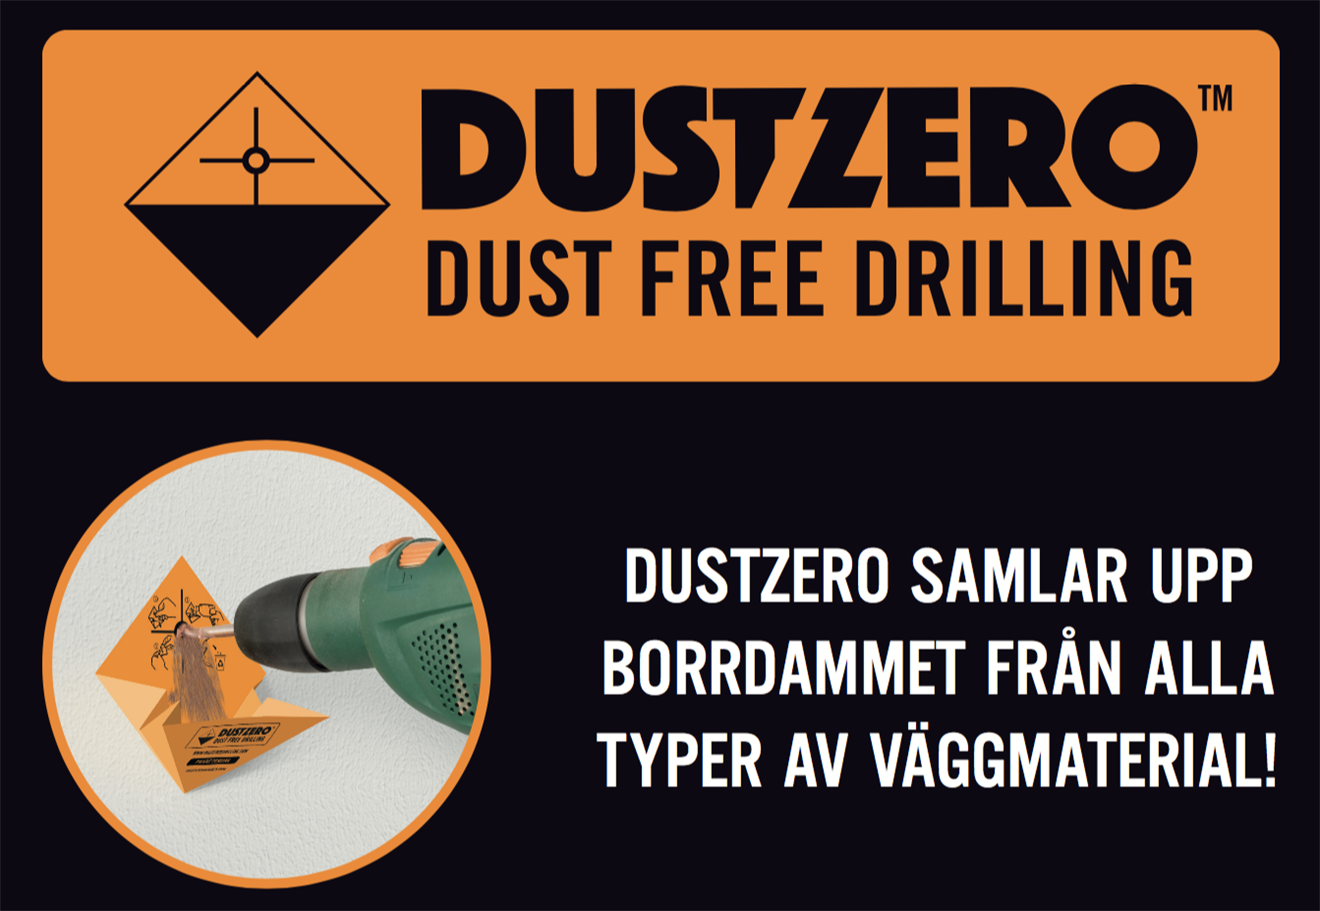 DustZero drilling 10p